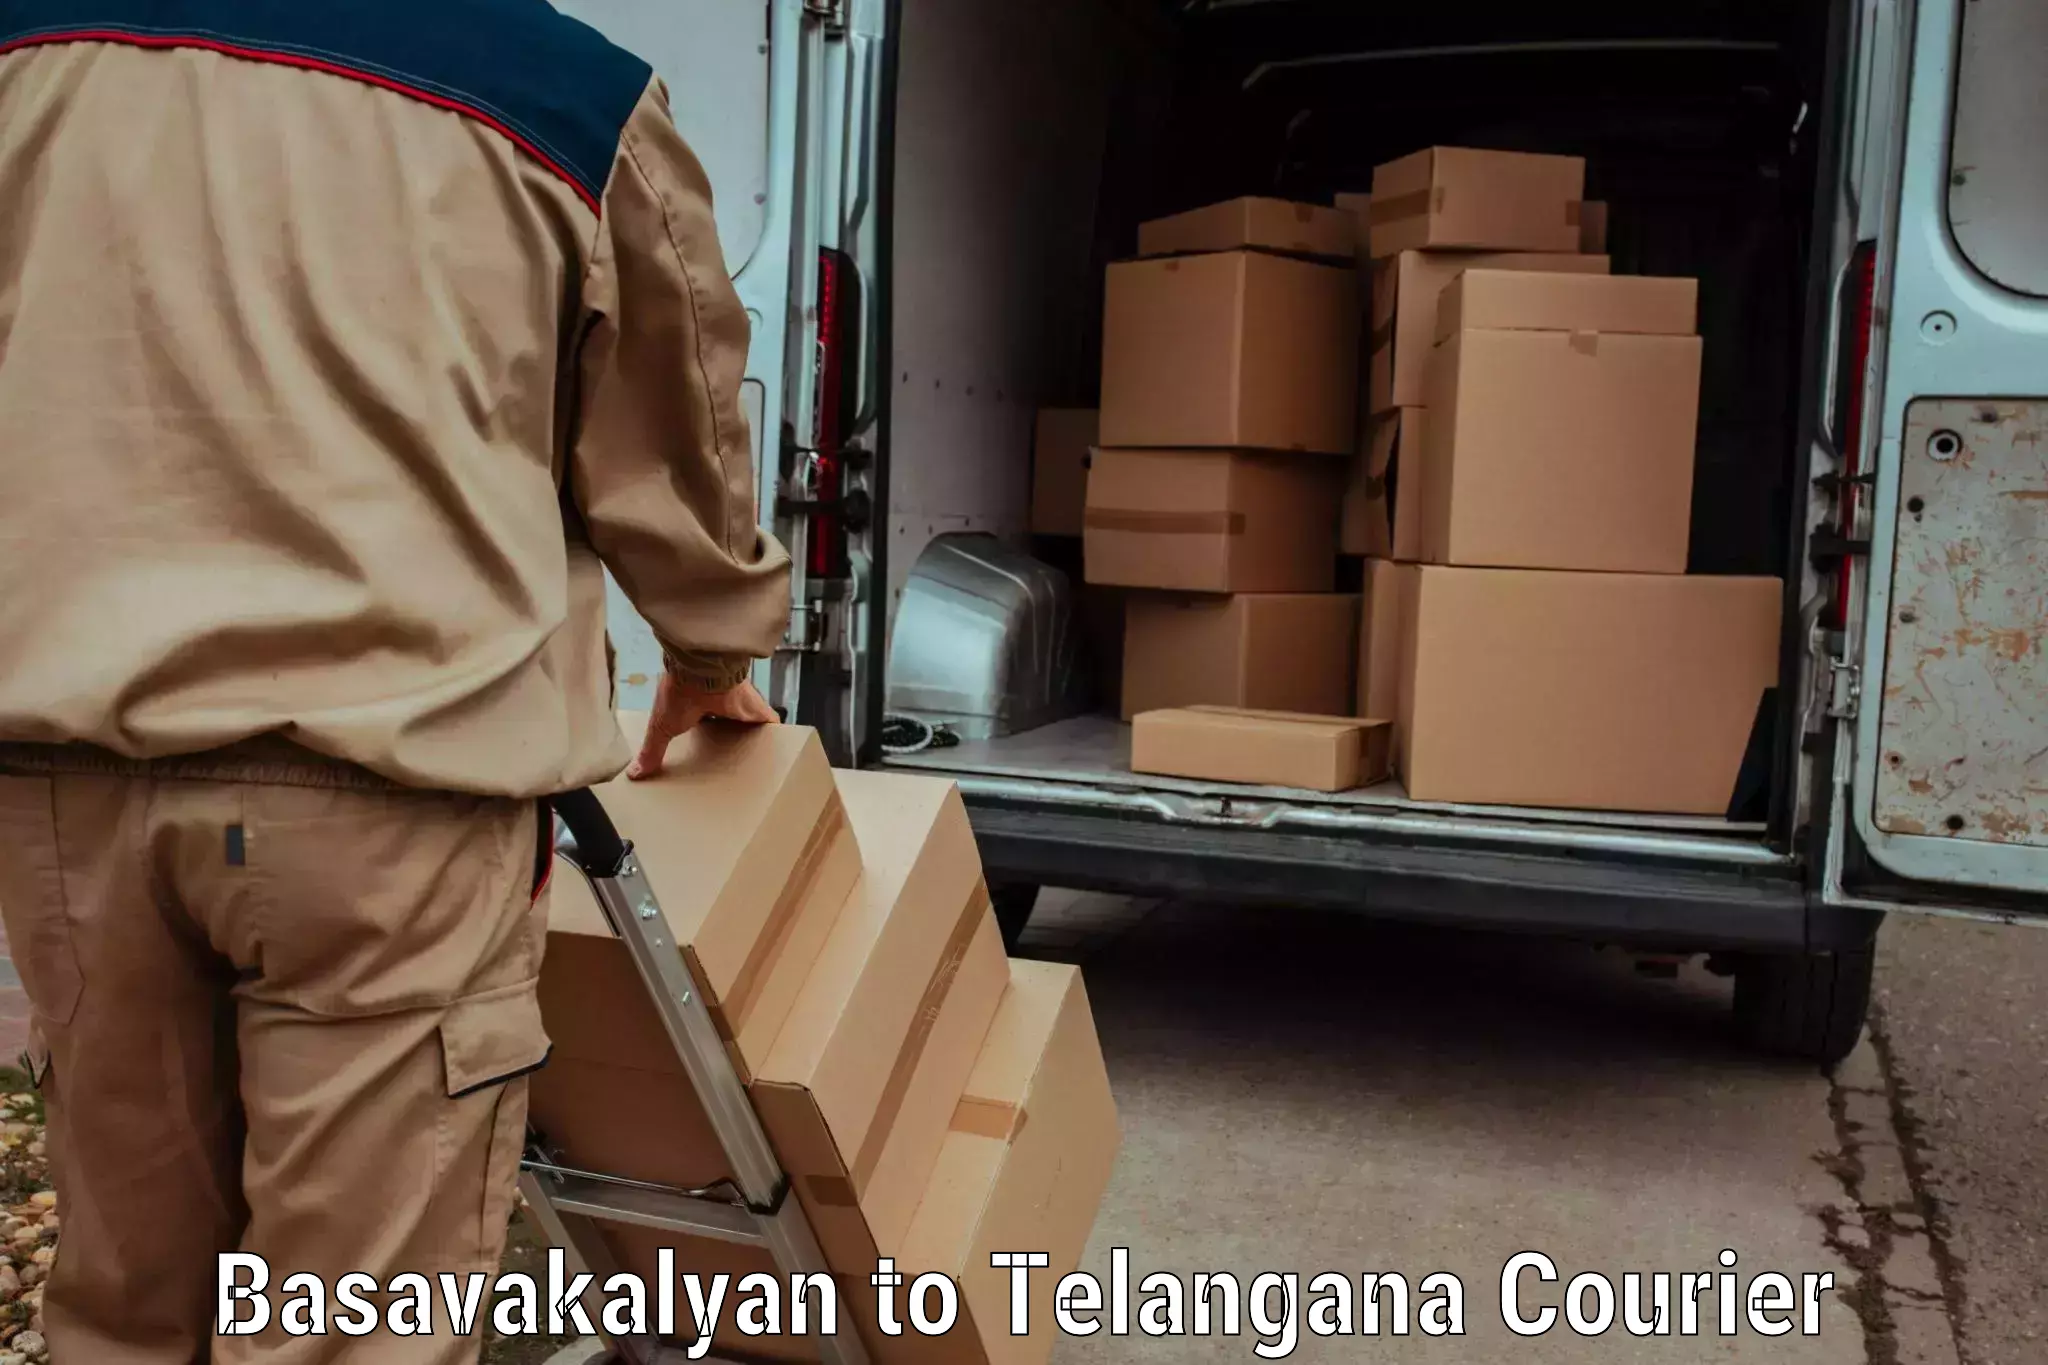 International courier networks Basavakalyan to Bodhan